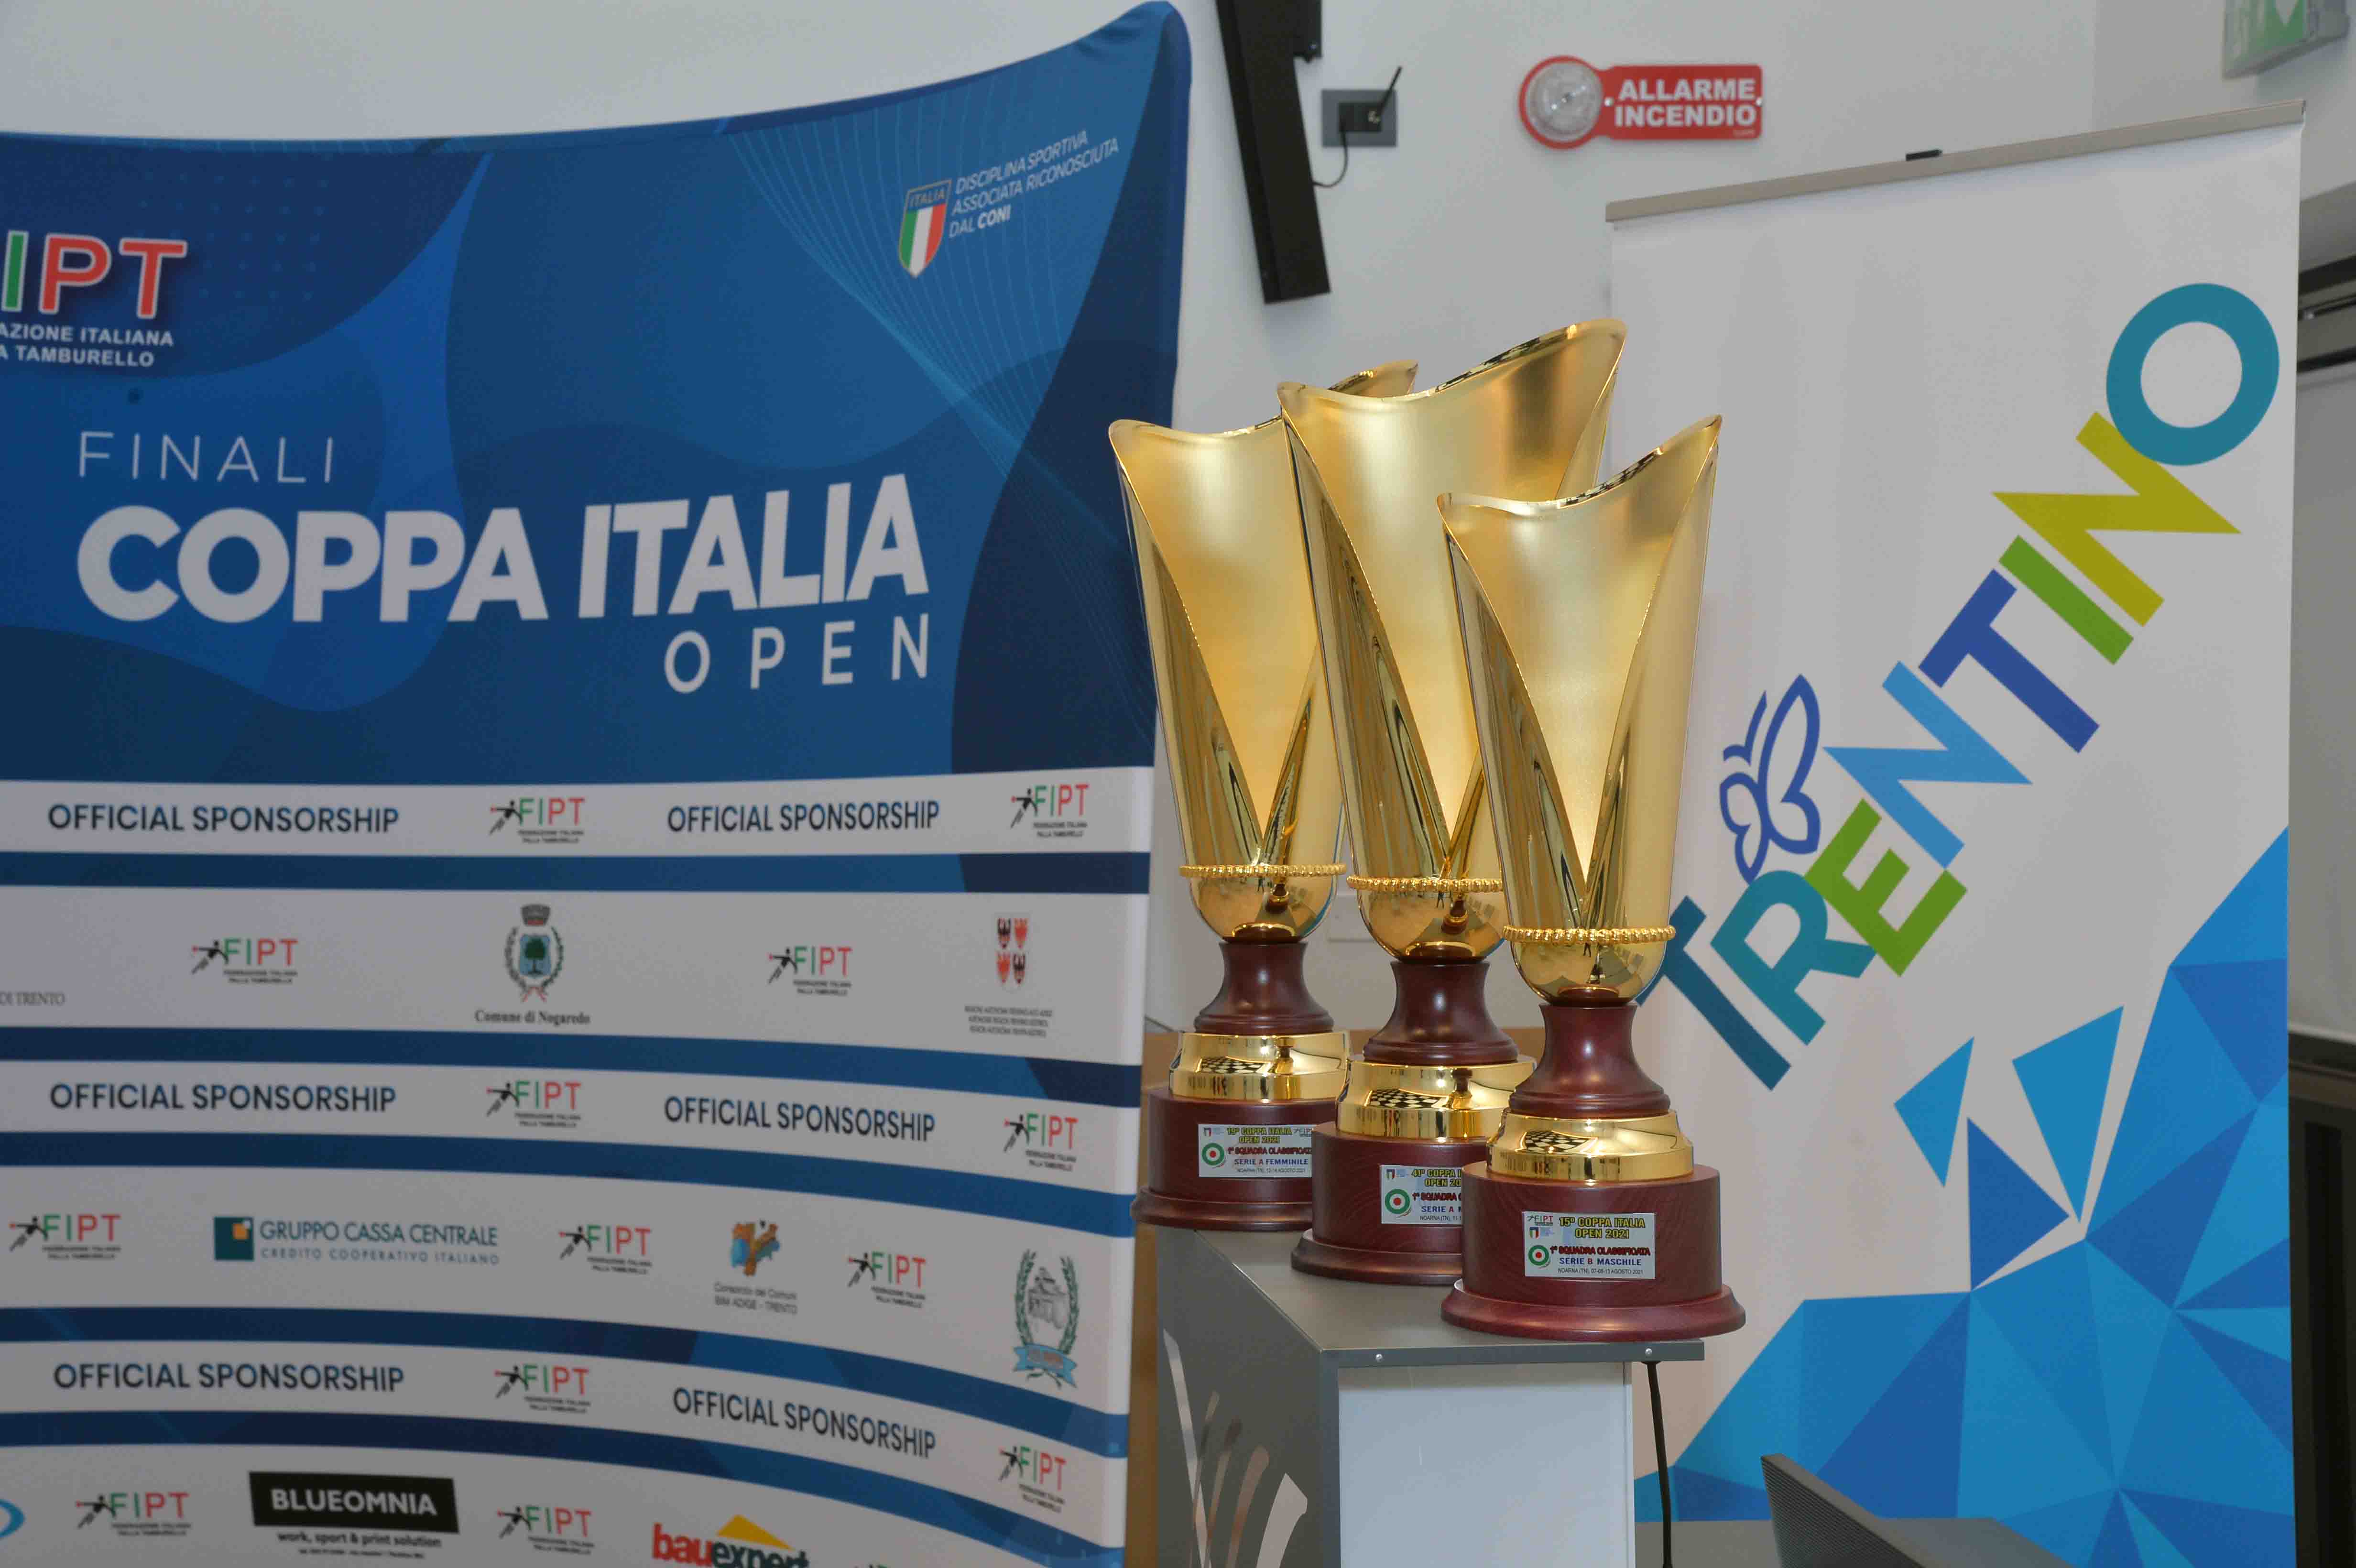 images/News_2021/Coppa_Italia/open/04.08.2021_Conferenza-Stampa/Presentazione_Coppa_Itgalia_foto_MOSNA__7627.jpg